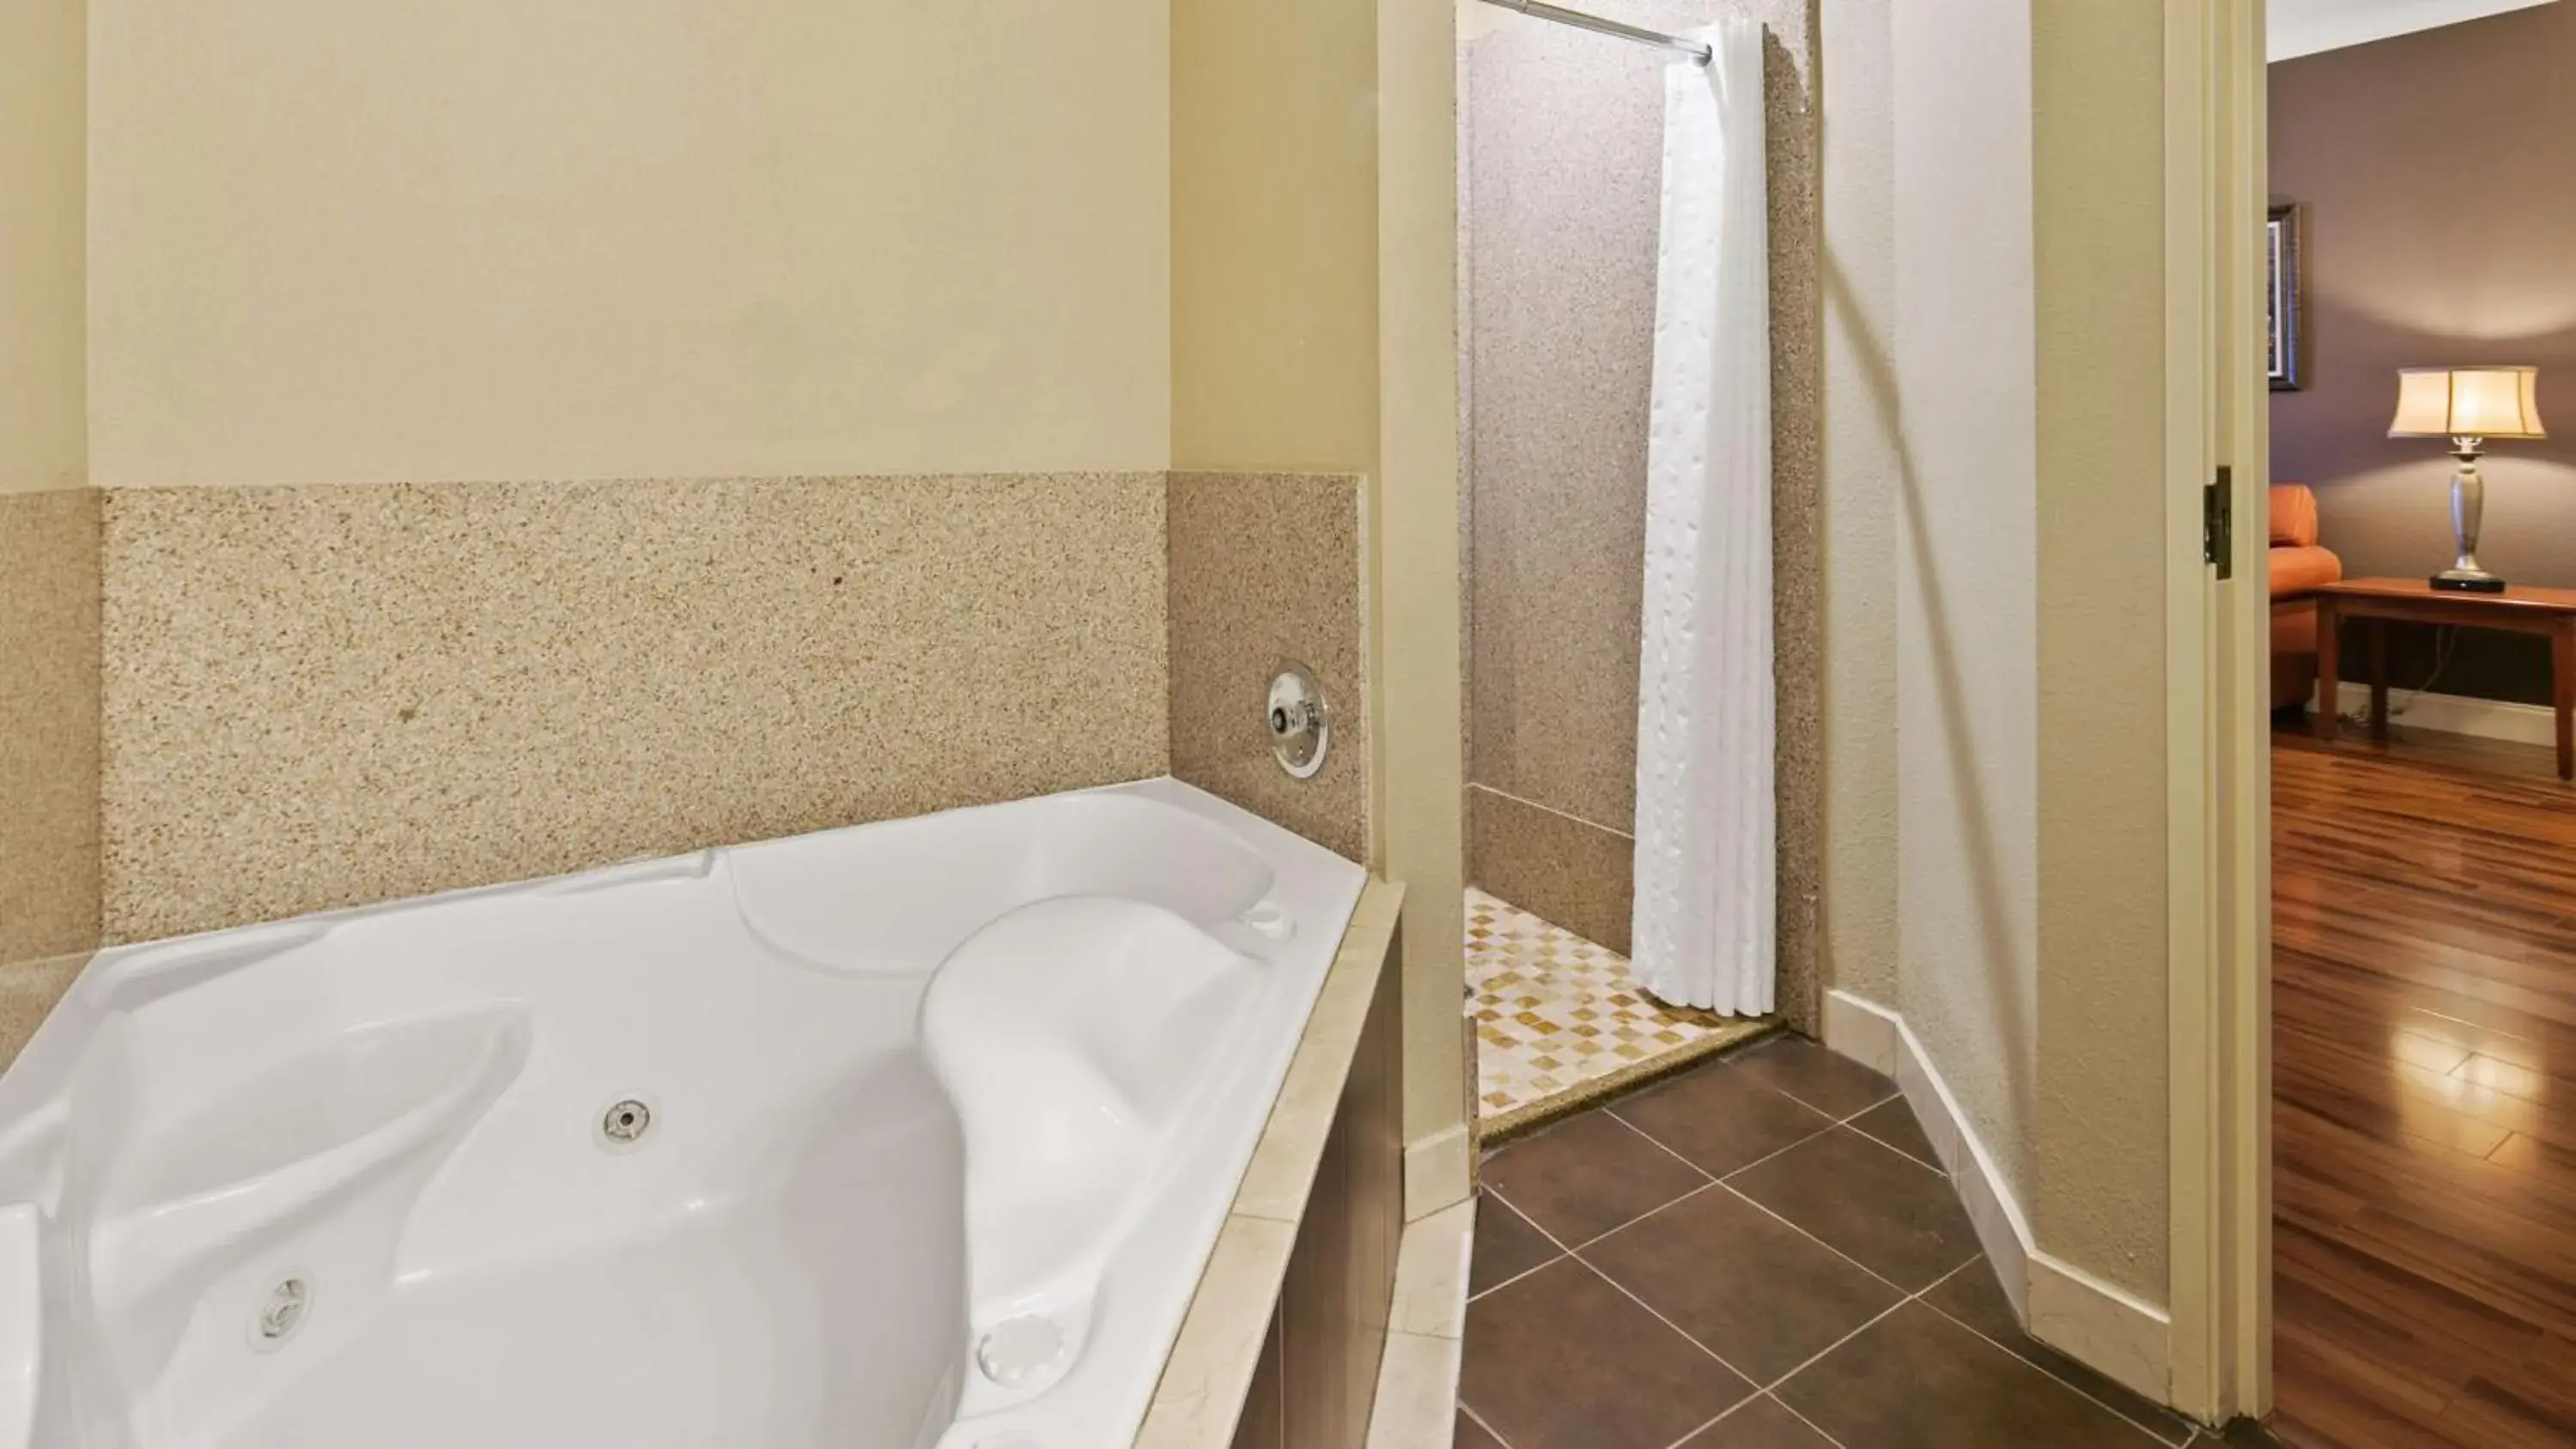 Photo of the whole room, Bathroom in Best Western Plus Georgetown Inn & Suites